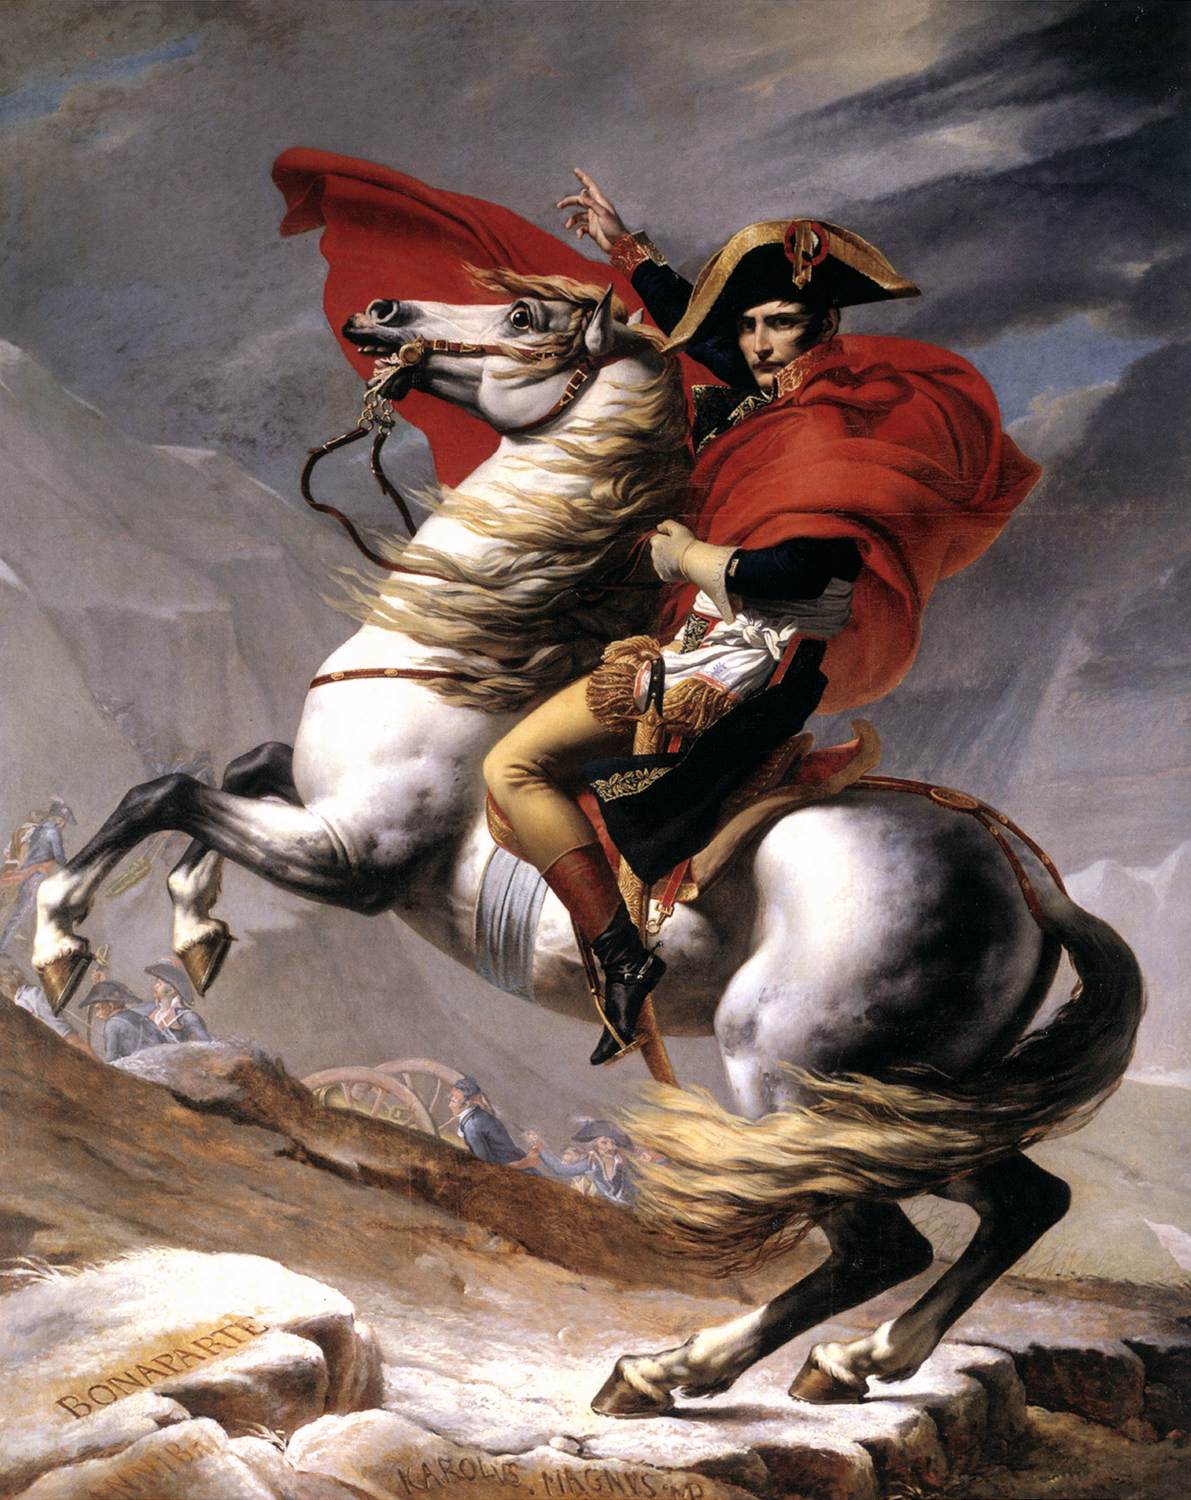 Bonaparte, ruhig in einem brennenden Ross, überquert die Alpen